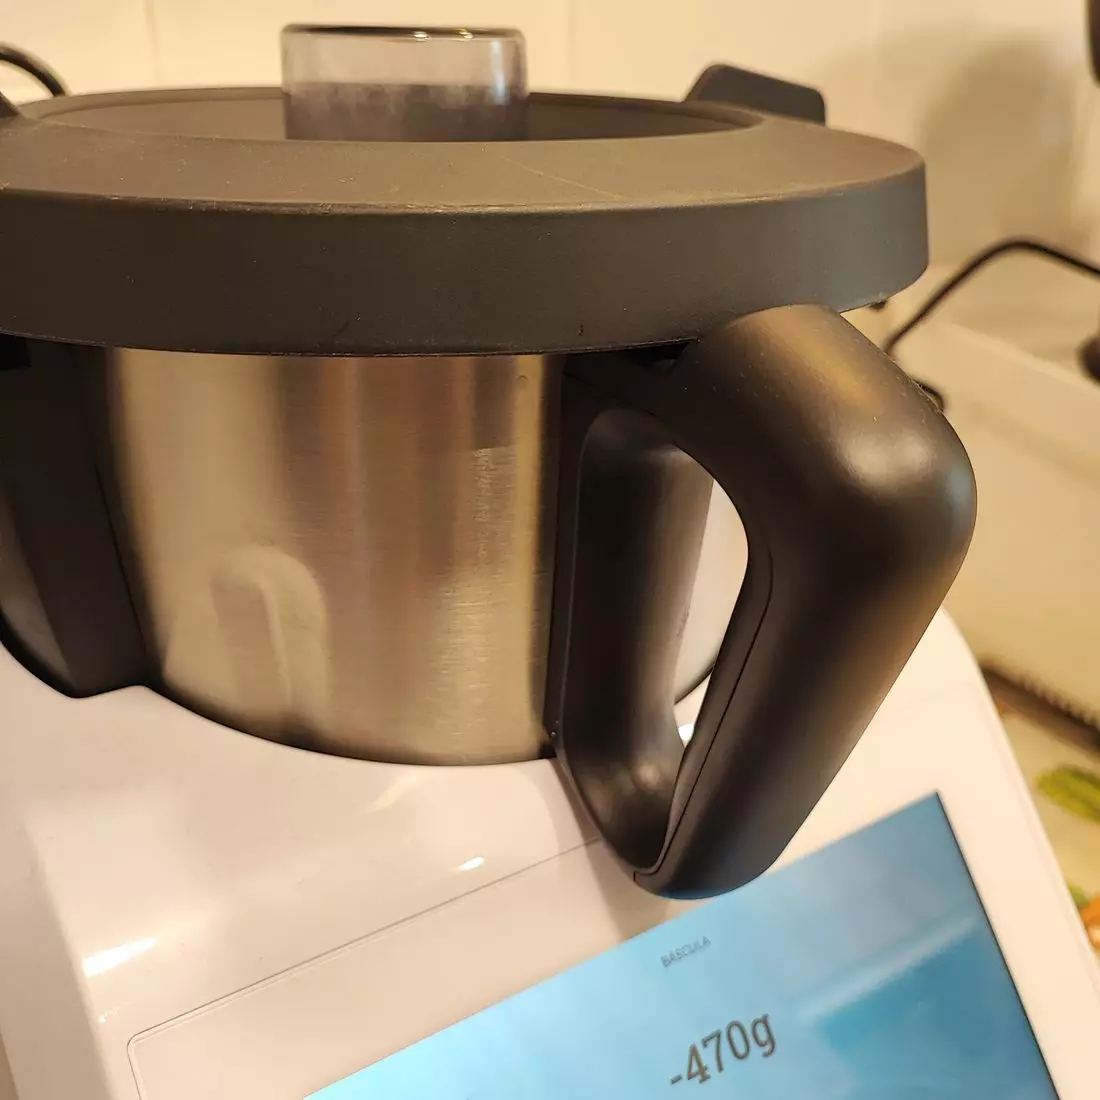 Merece la pena el robot de cocina de Lidl? La Thermomix barata